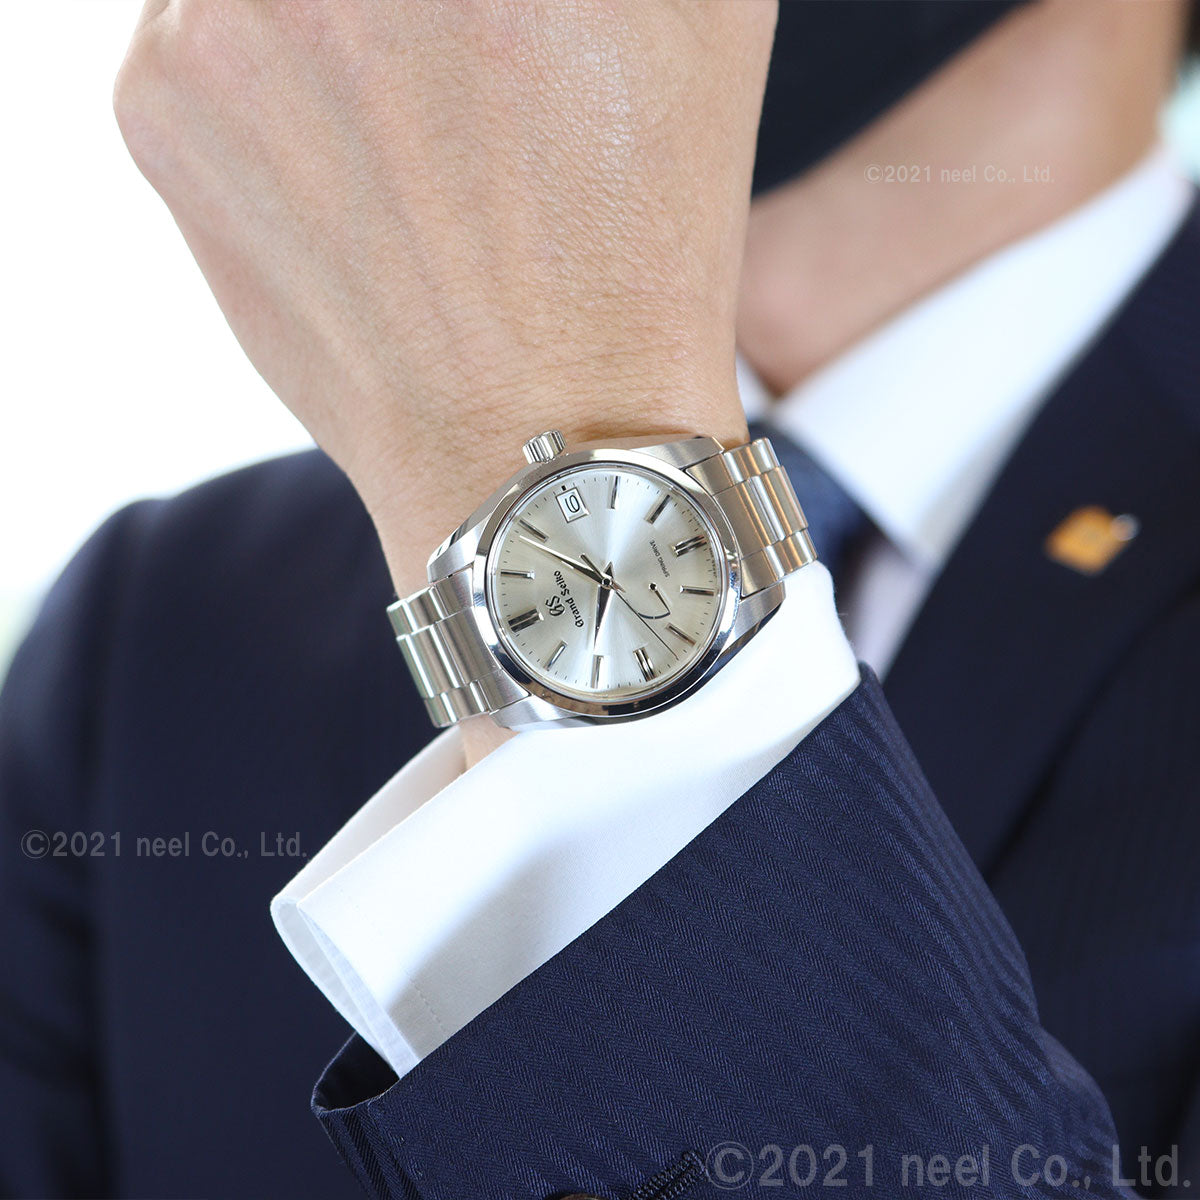 【36回分割手数料無料！】グランドセイコー GRAND SEIKO 腕時計 メンズ レディース SBGA437 STGF273 ペアモデル【正規品】